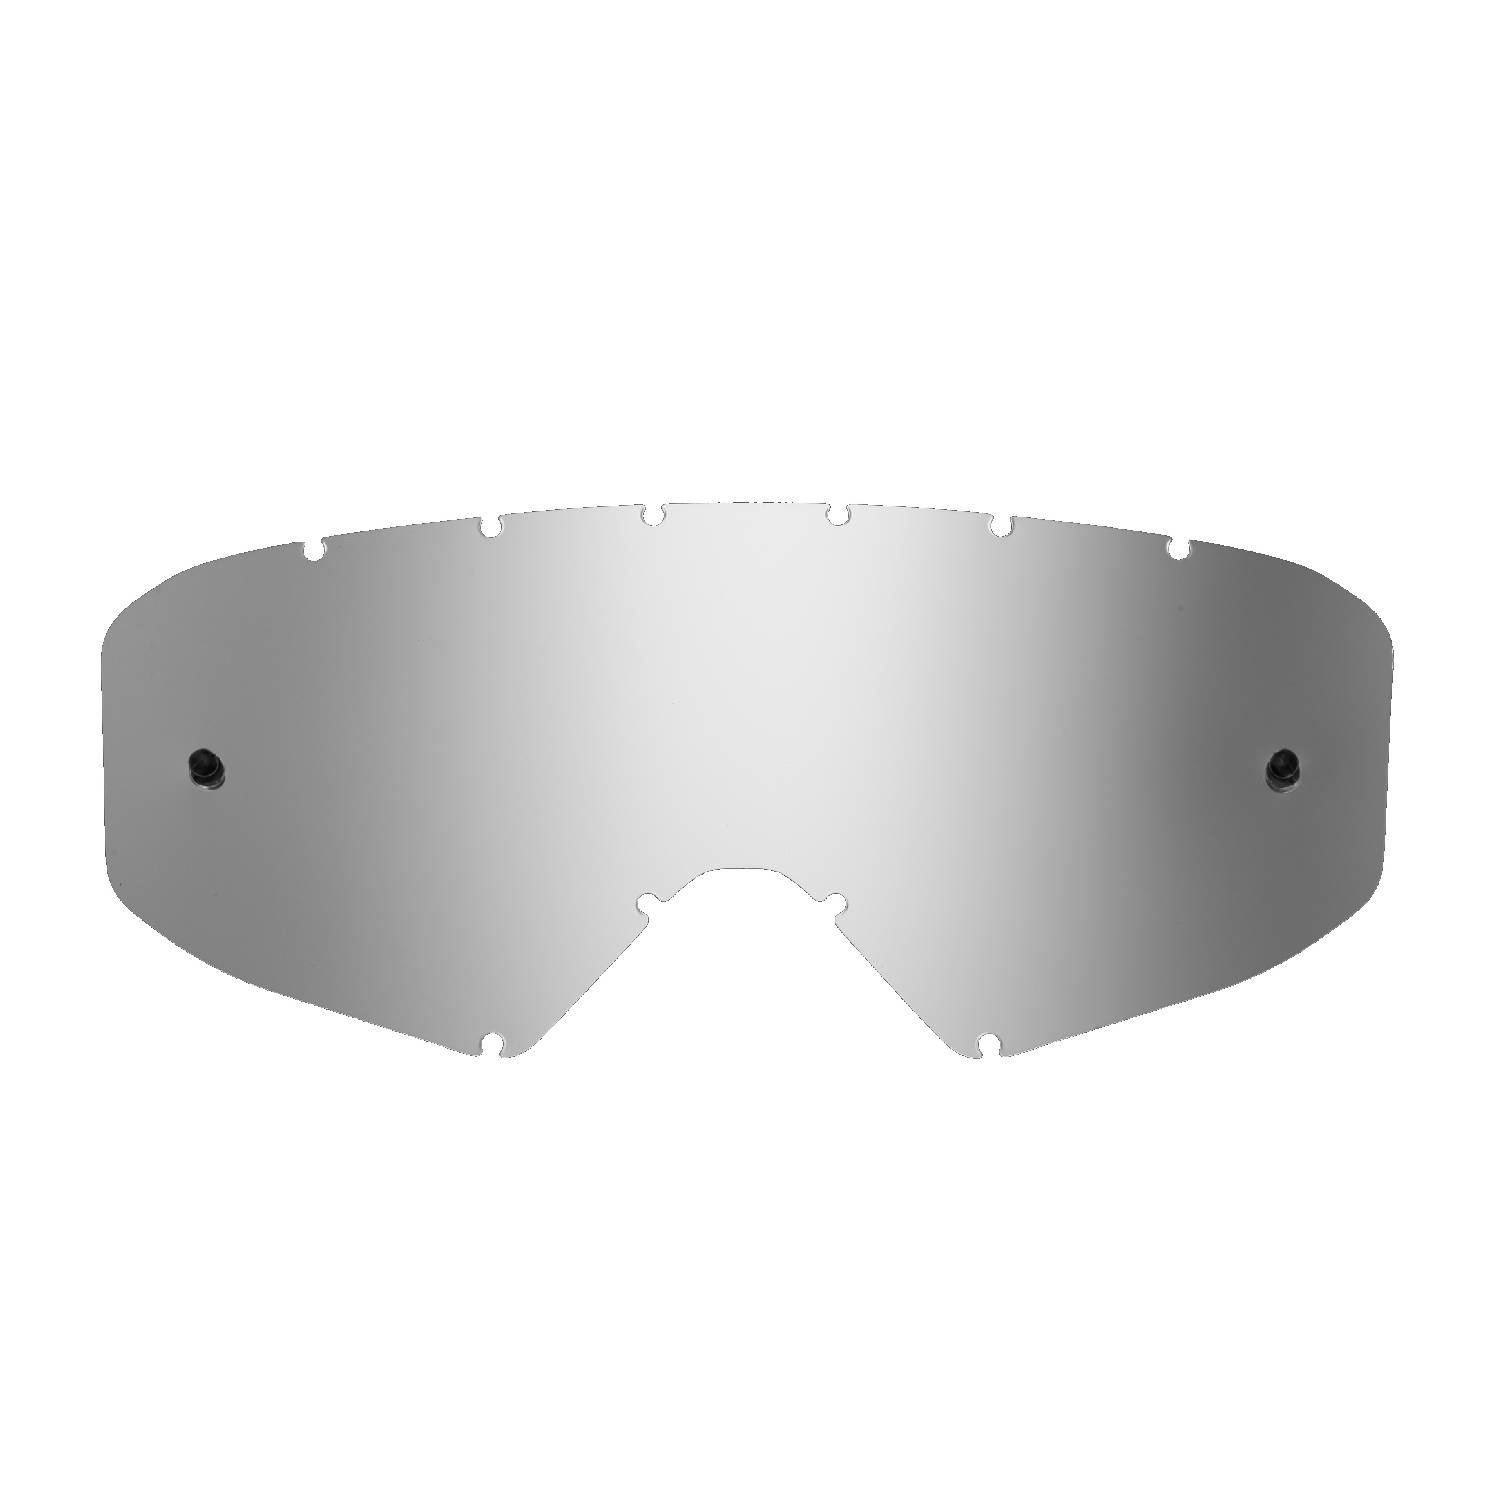 Lente di ricambio argento specchiato compatibile per occhiale/maschera cross Ethen Zerocinque Primis / R / Ares / Ares Pluma